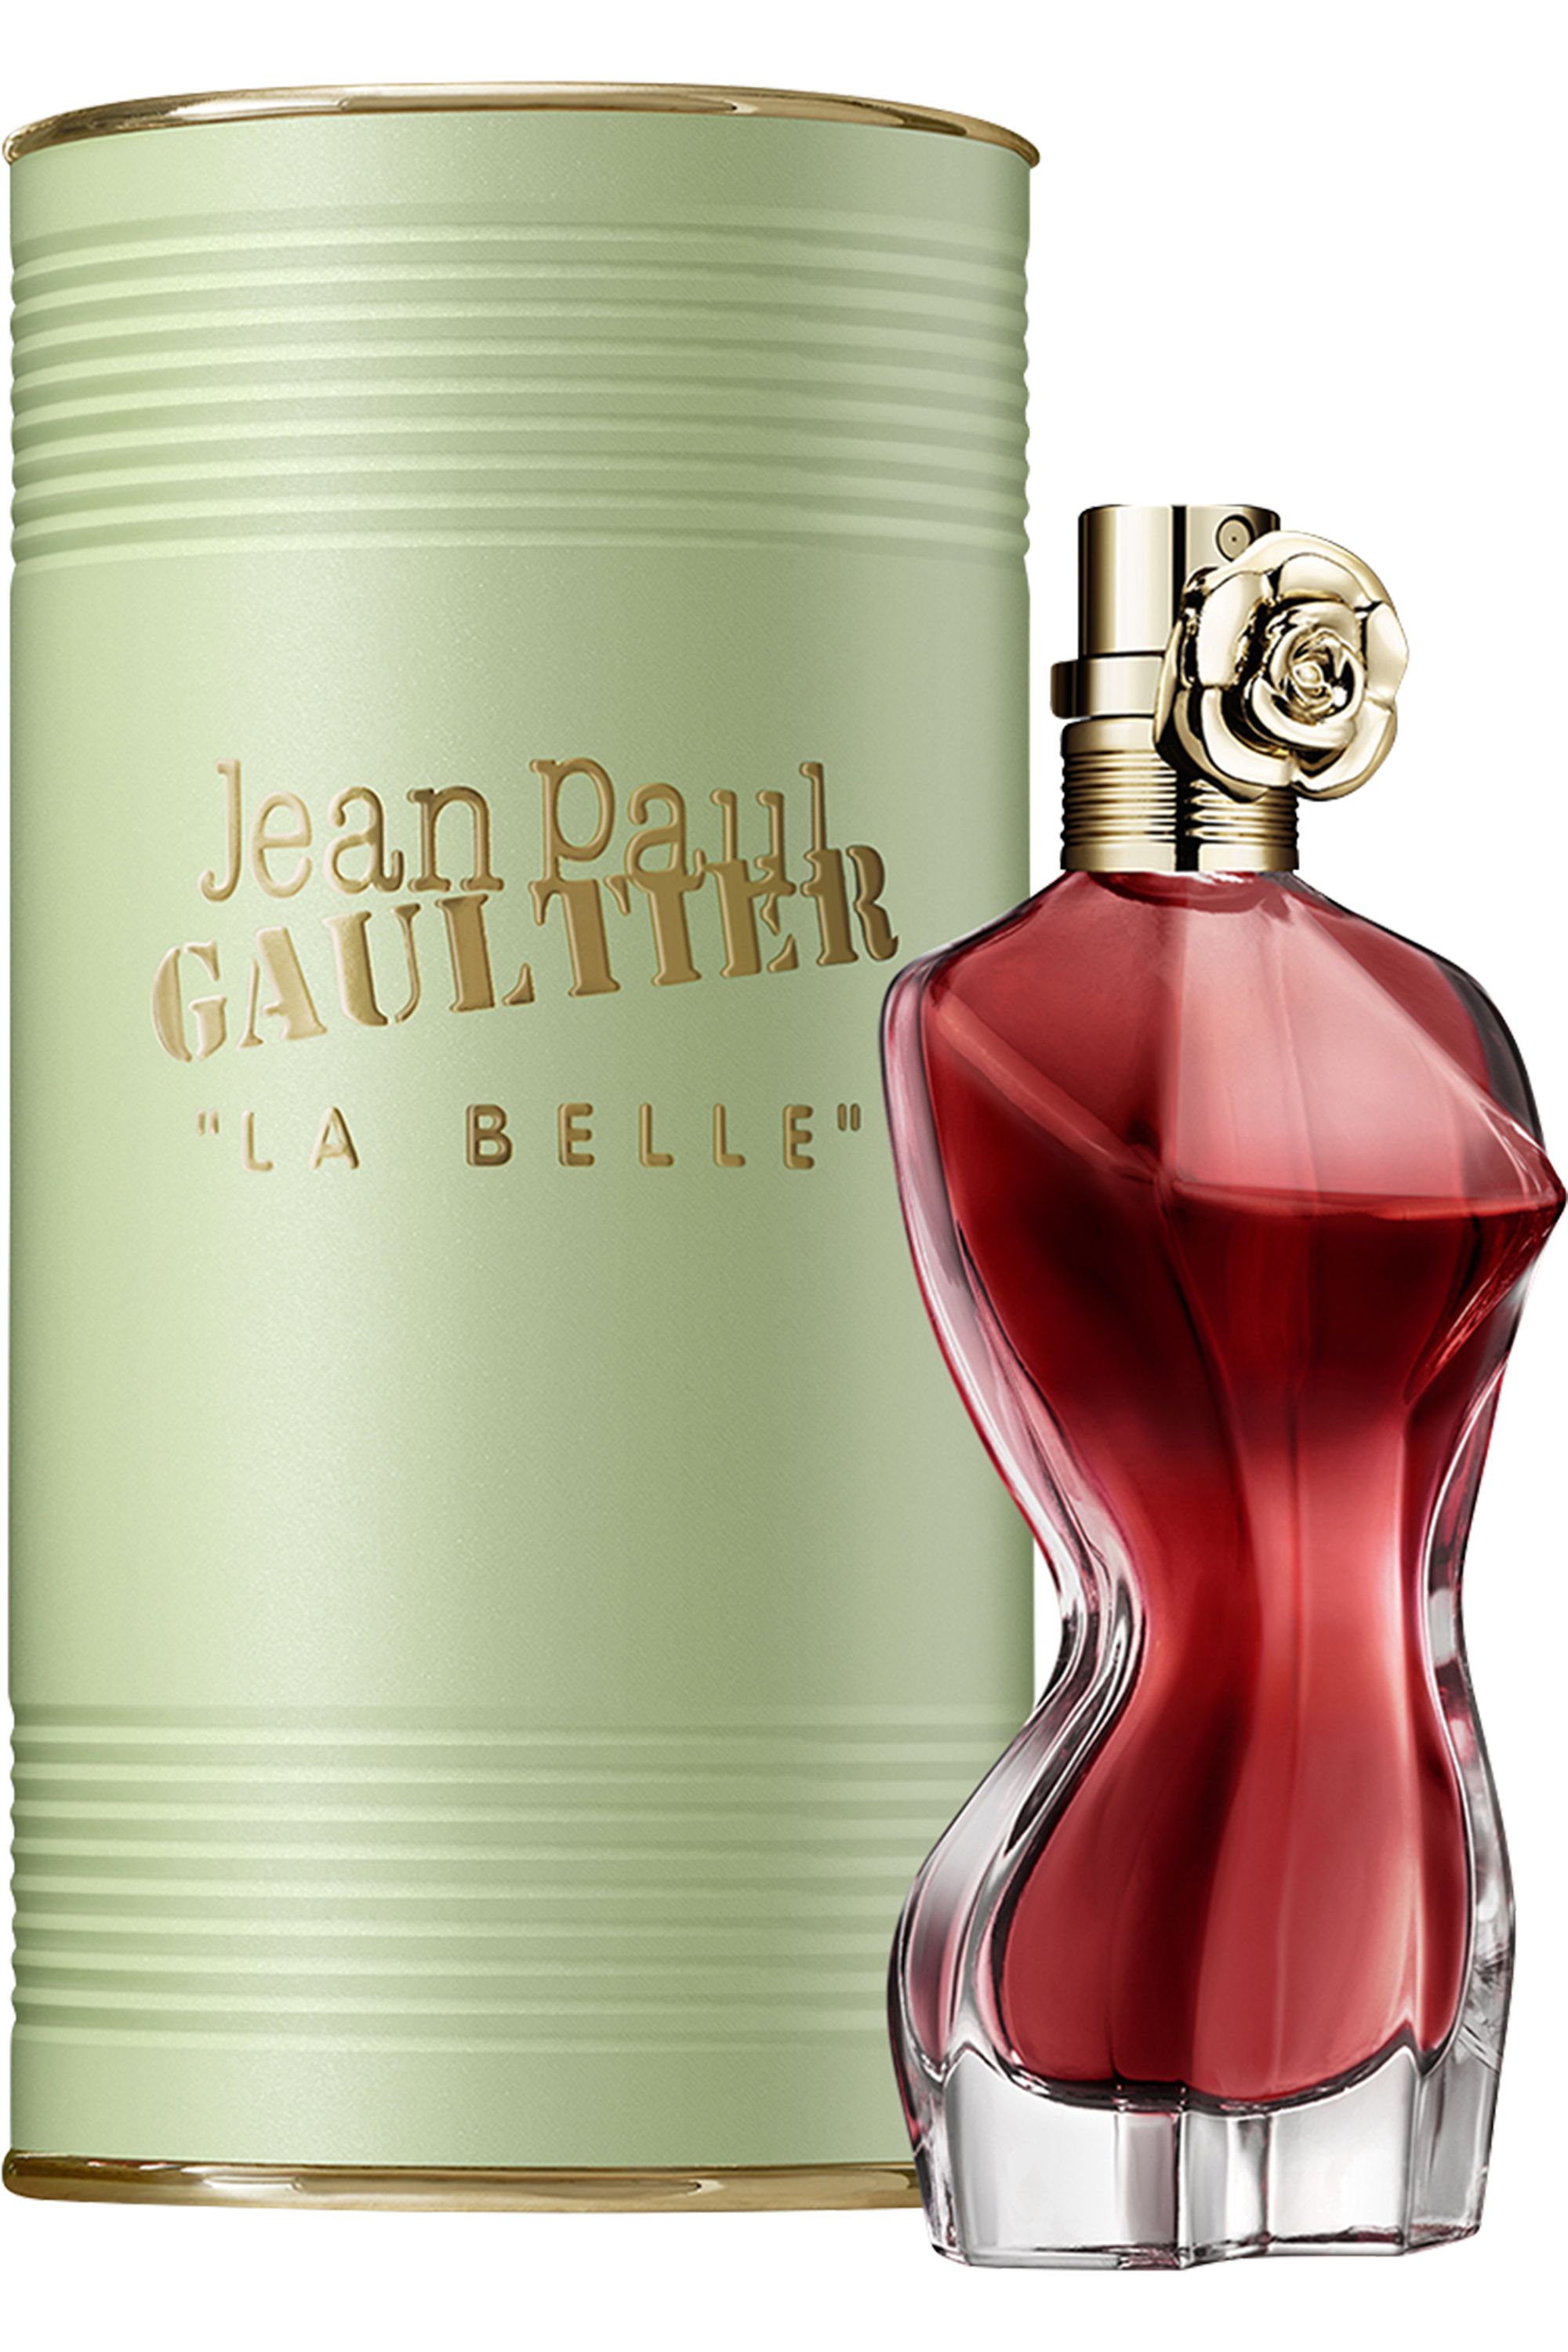 Jean Paul Gaultier - Eau de parfum La Belle - Blissim